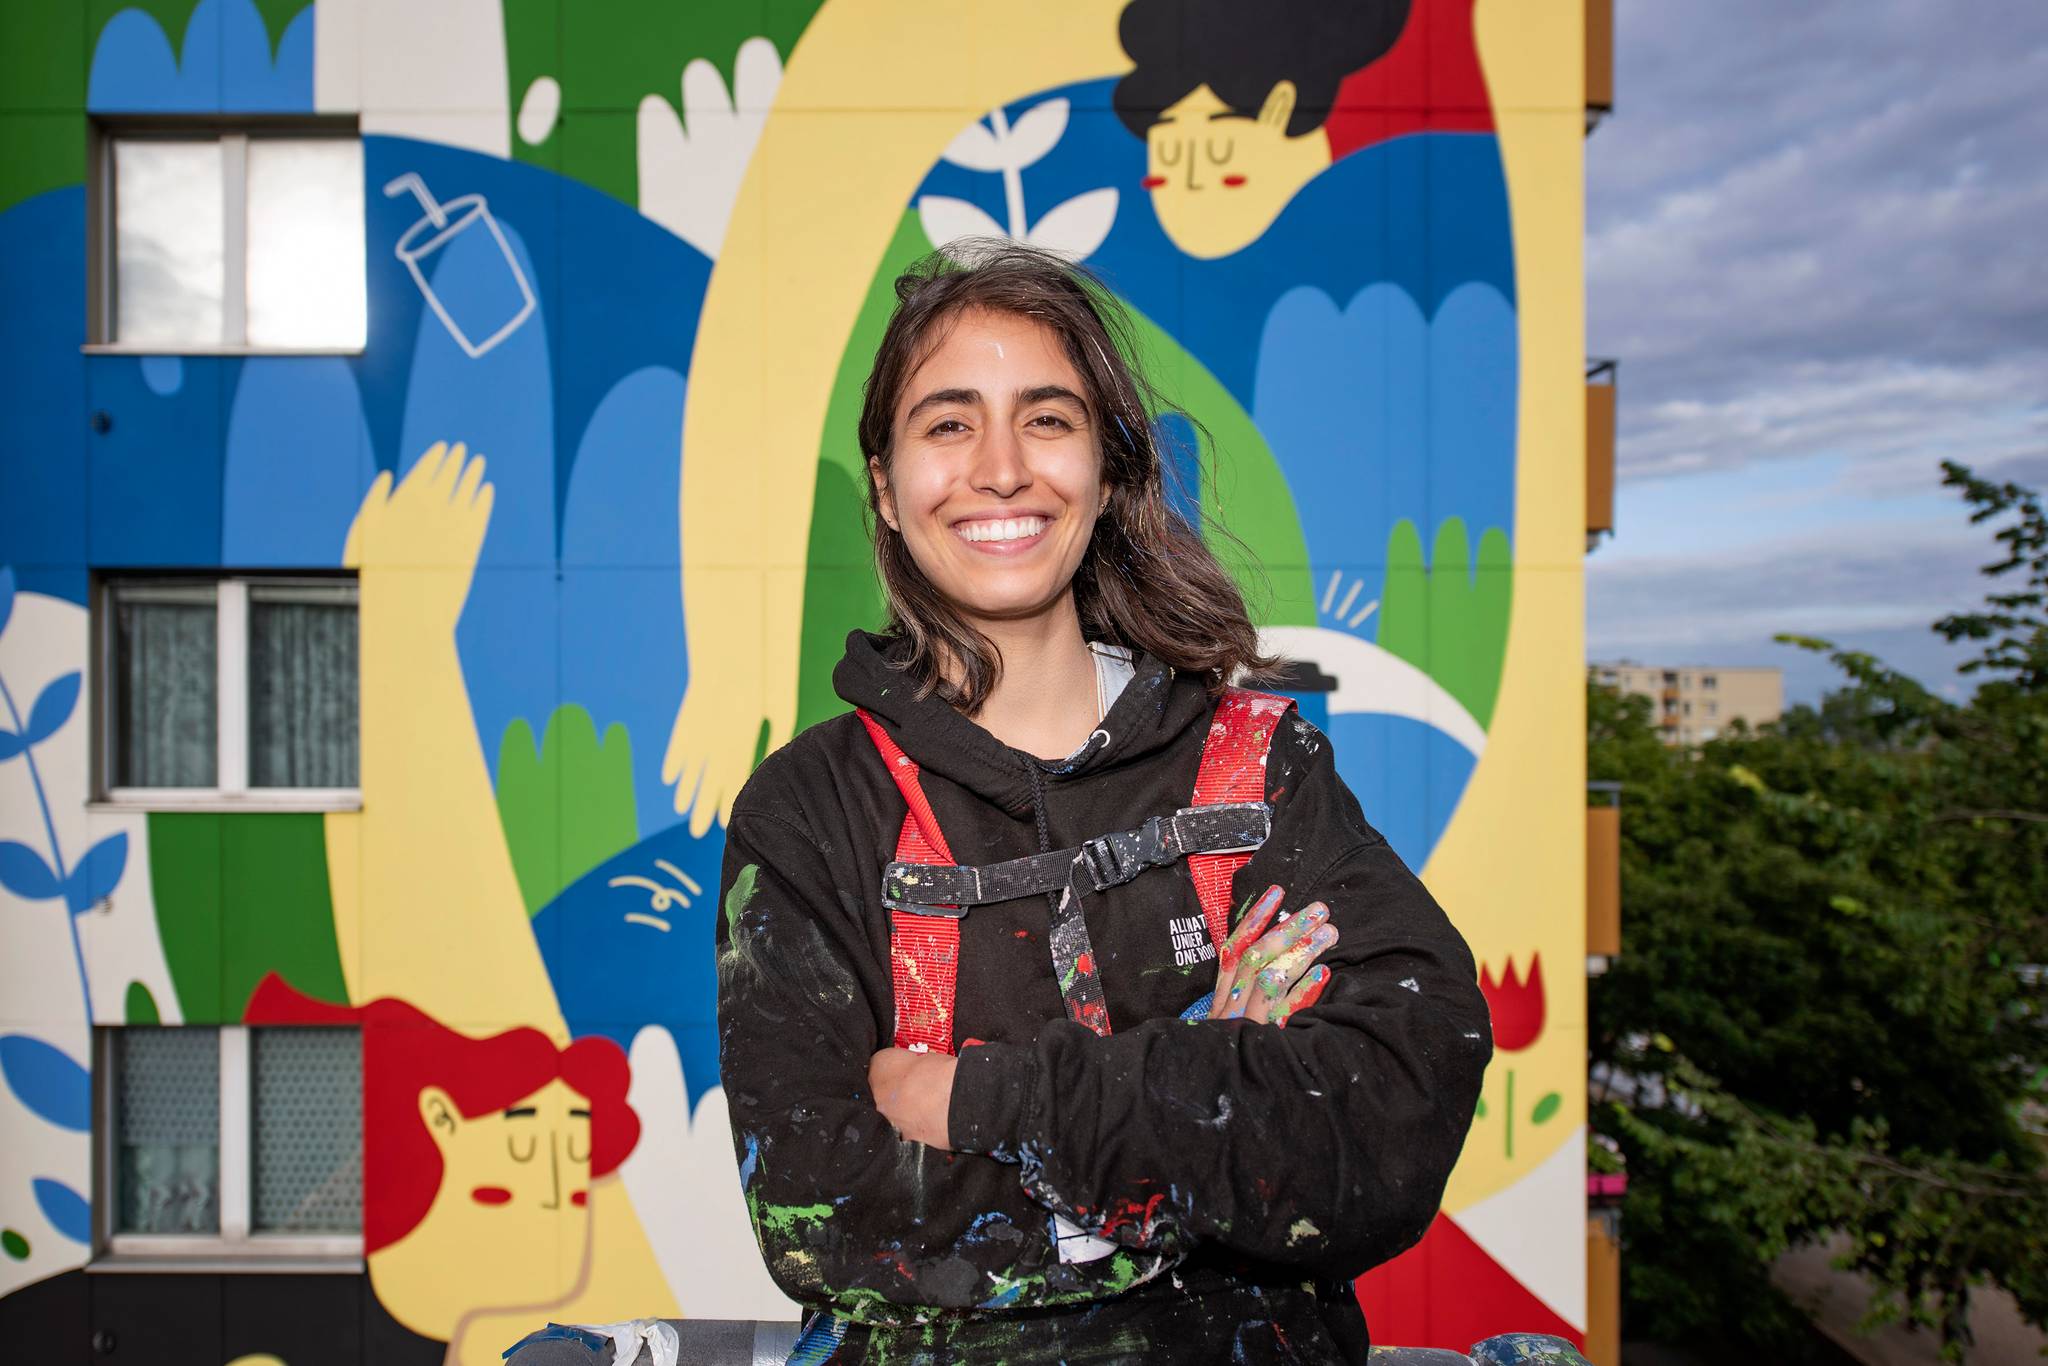 Julia Mota Albuquerque&mdash;MORE ART less litter